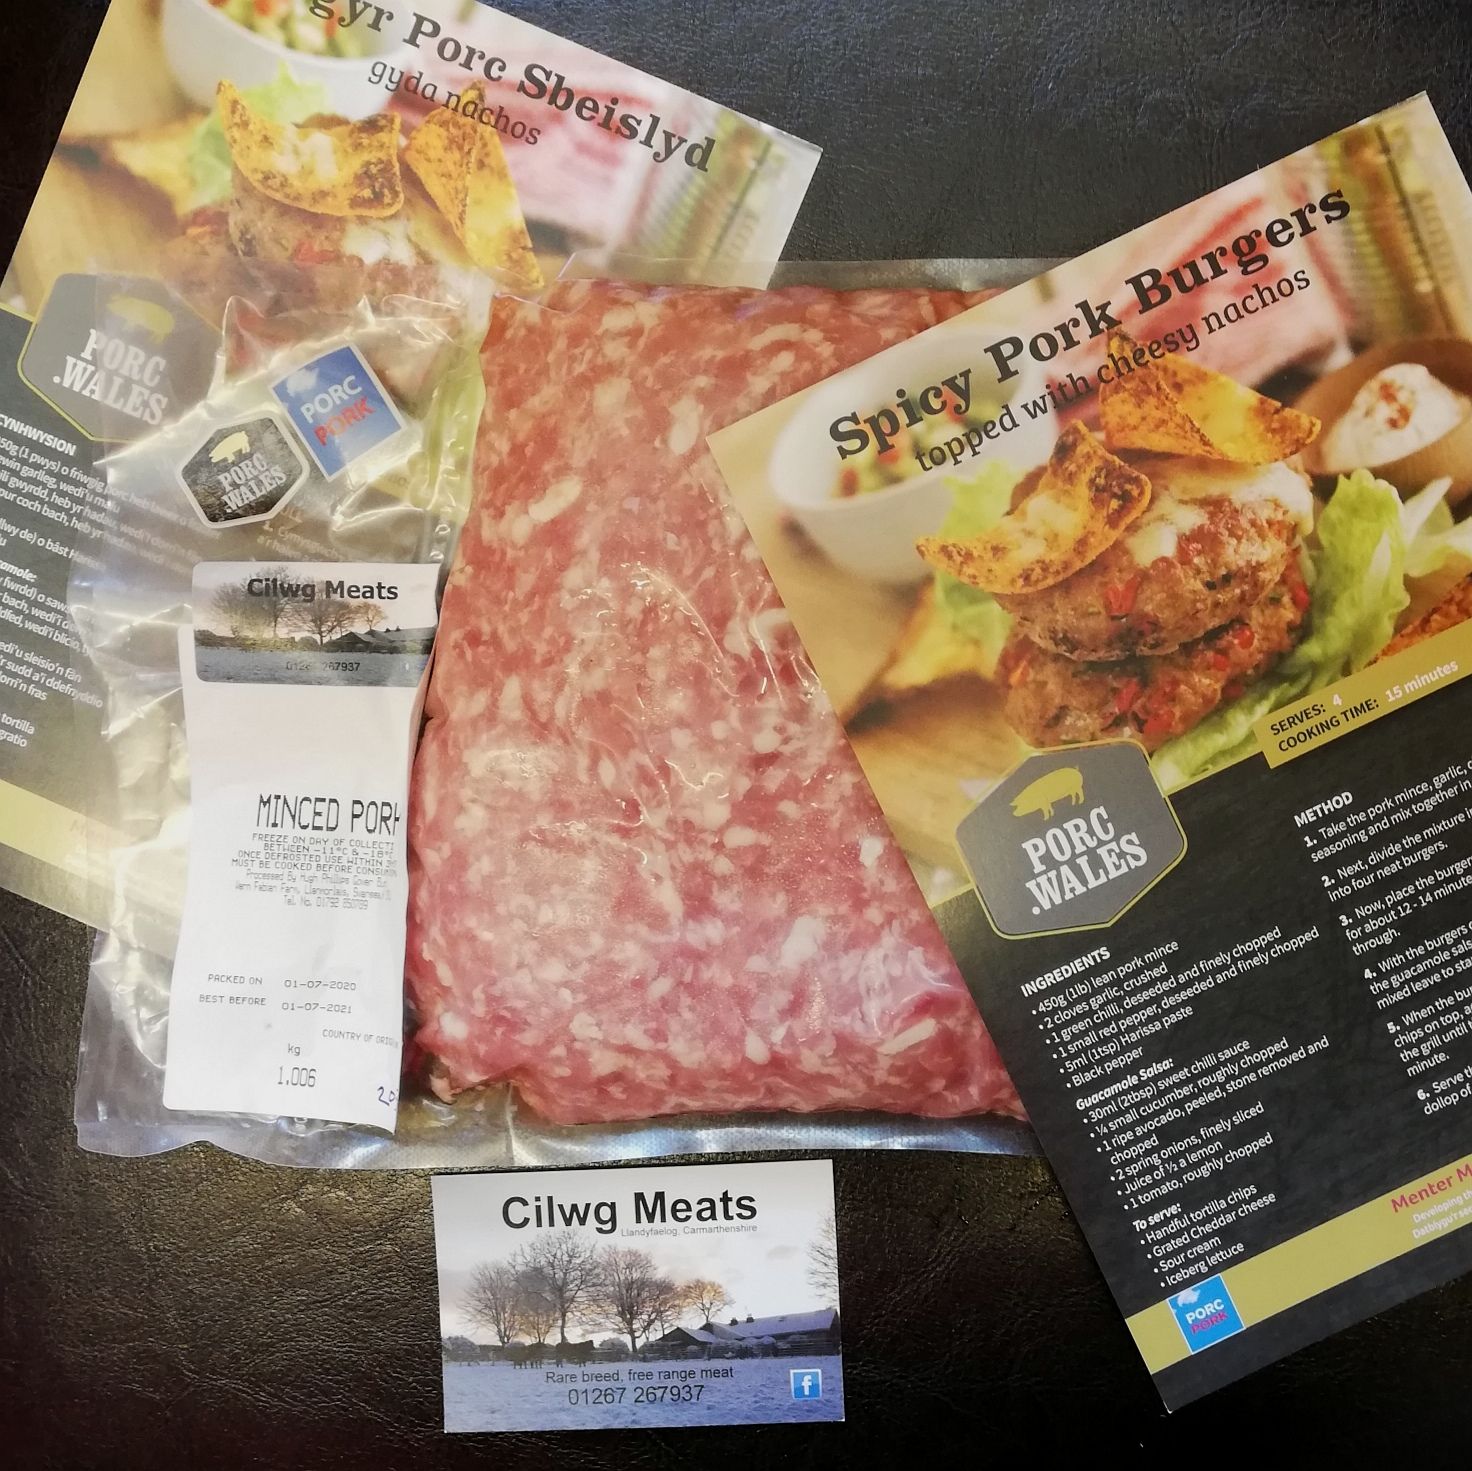 Free range pork mince with leaflets